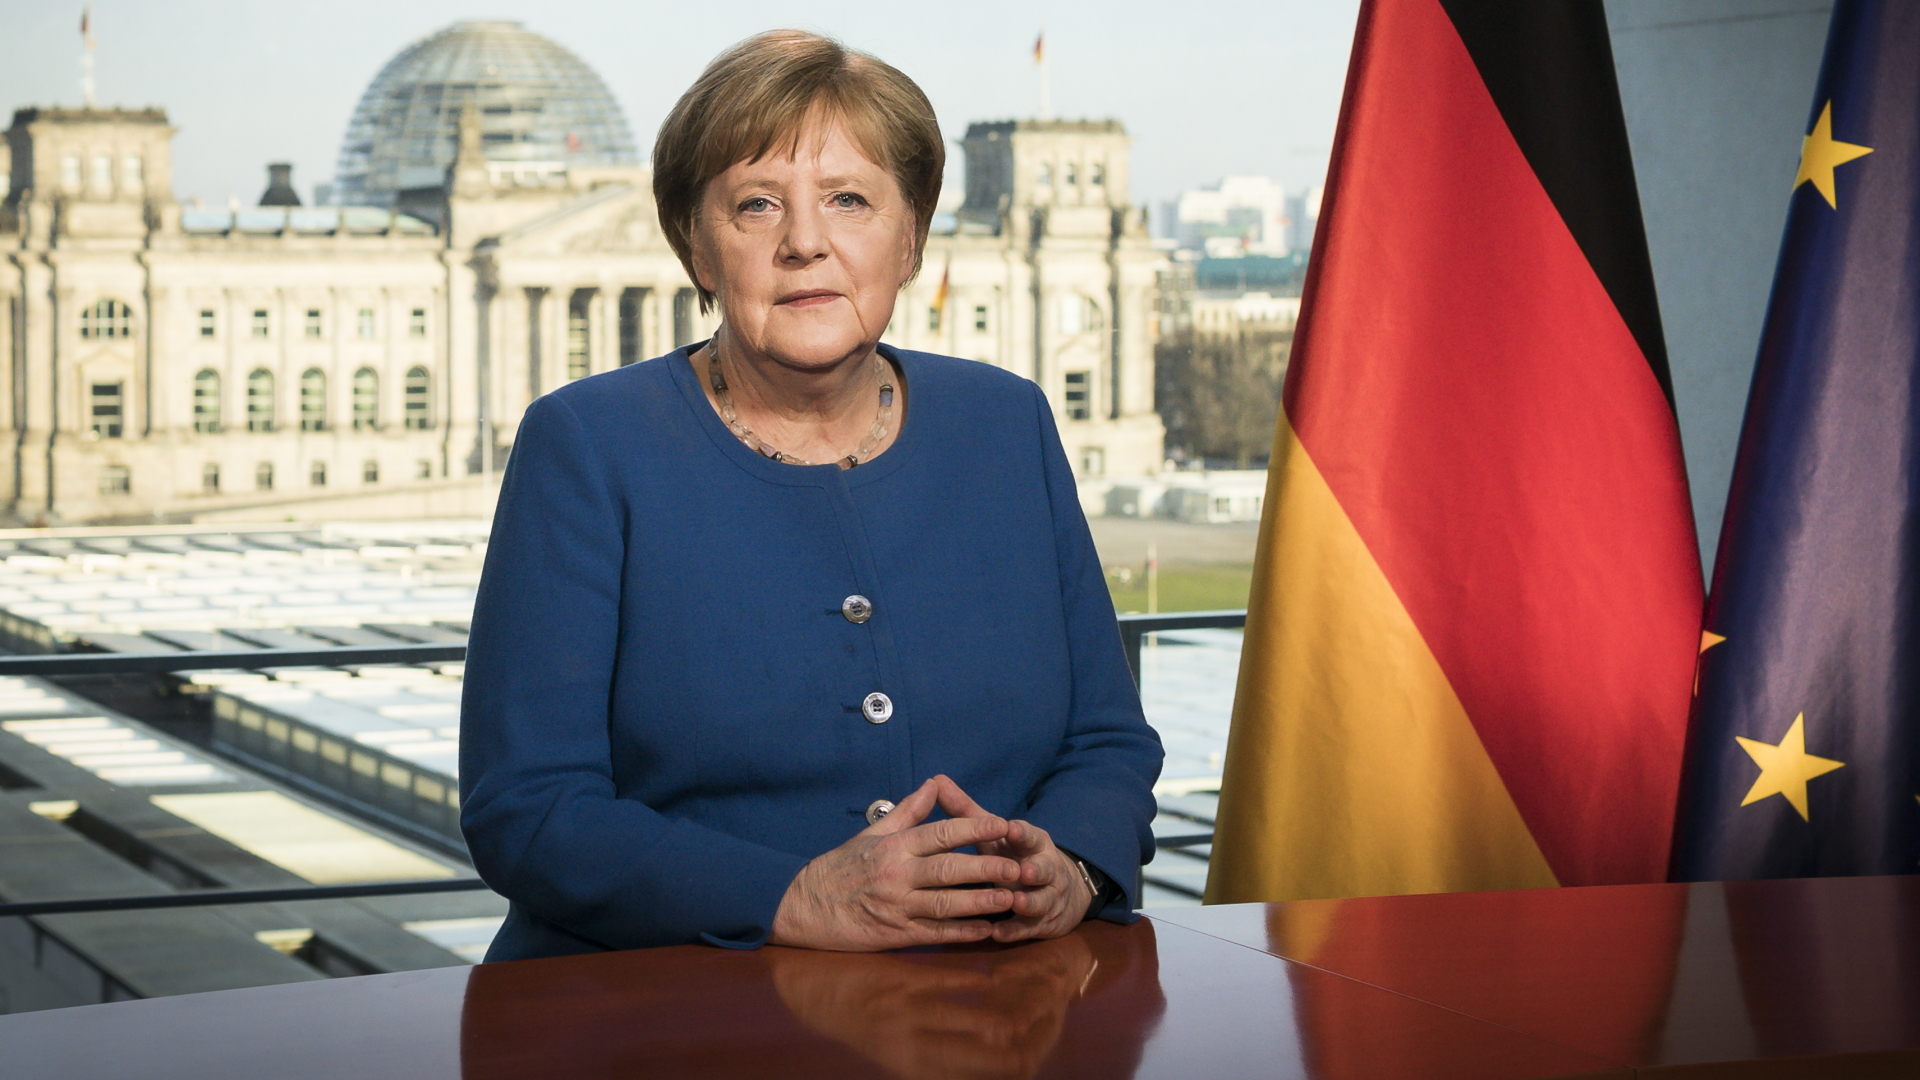 Bundeskanzlerin Angela Merkel (CDU) aufgenommen bei der Aufzeichnung einer Fernsehansprache im Bundeskanzleramt. | dpa